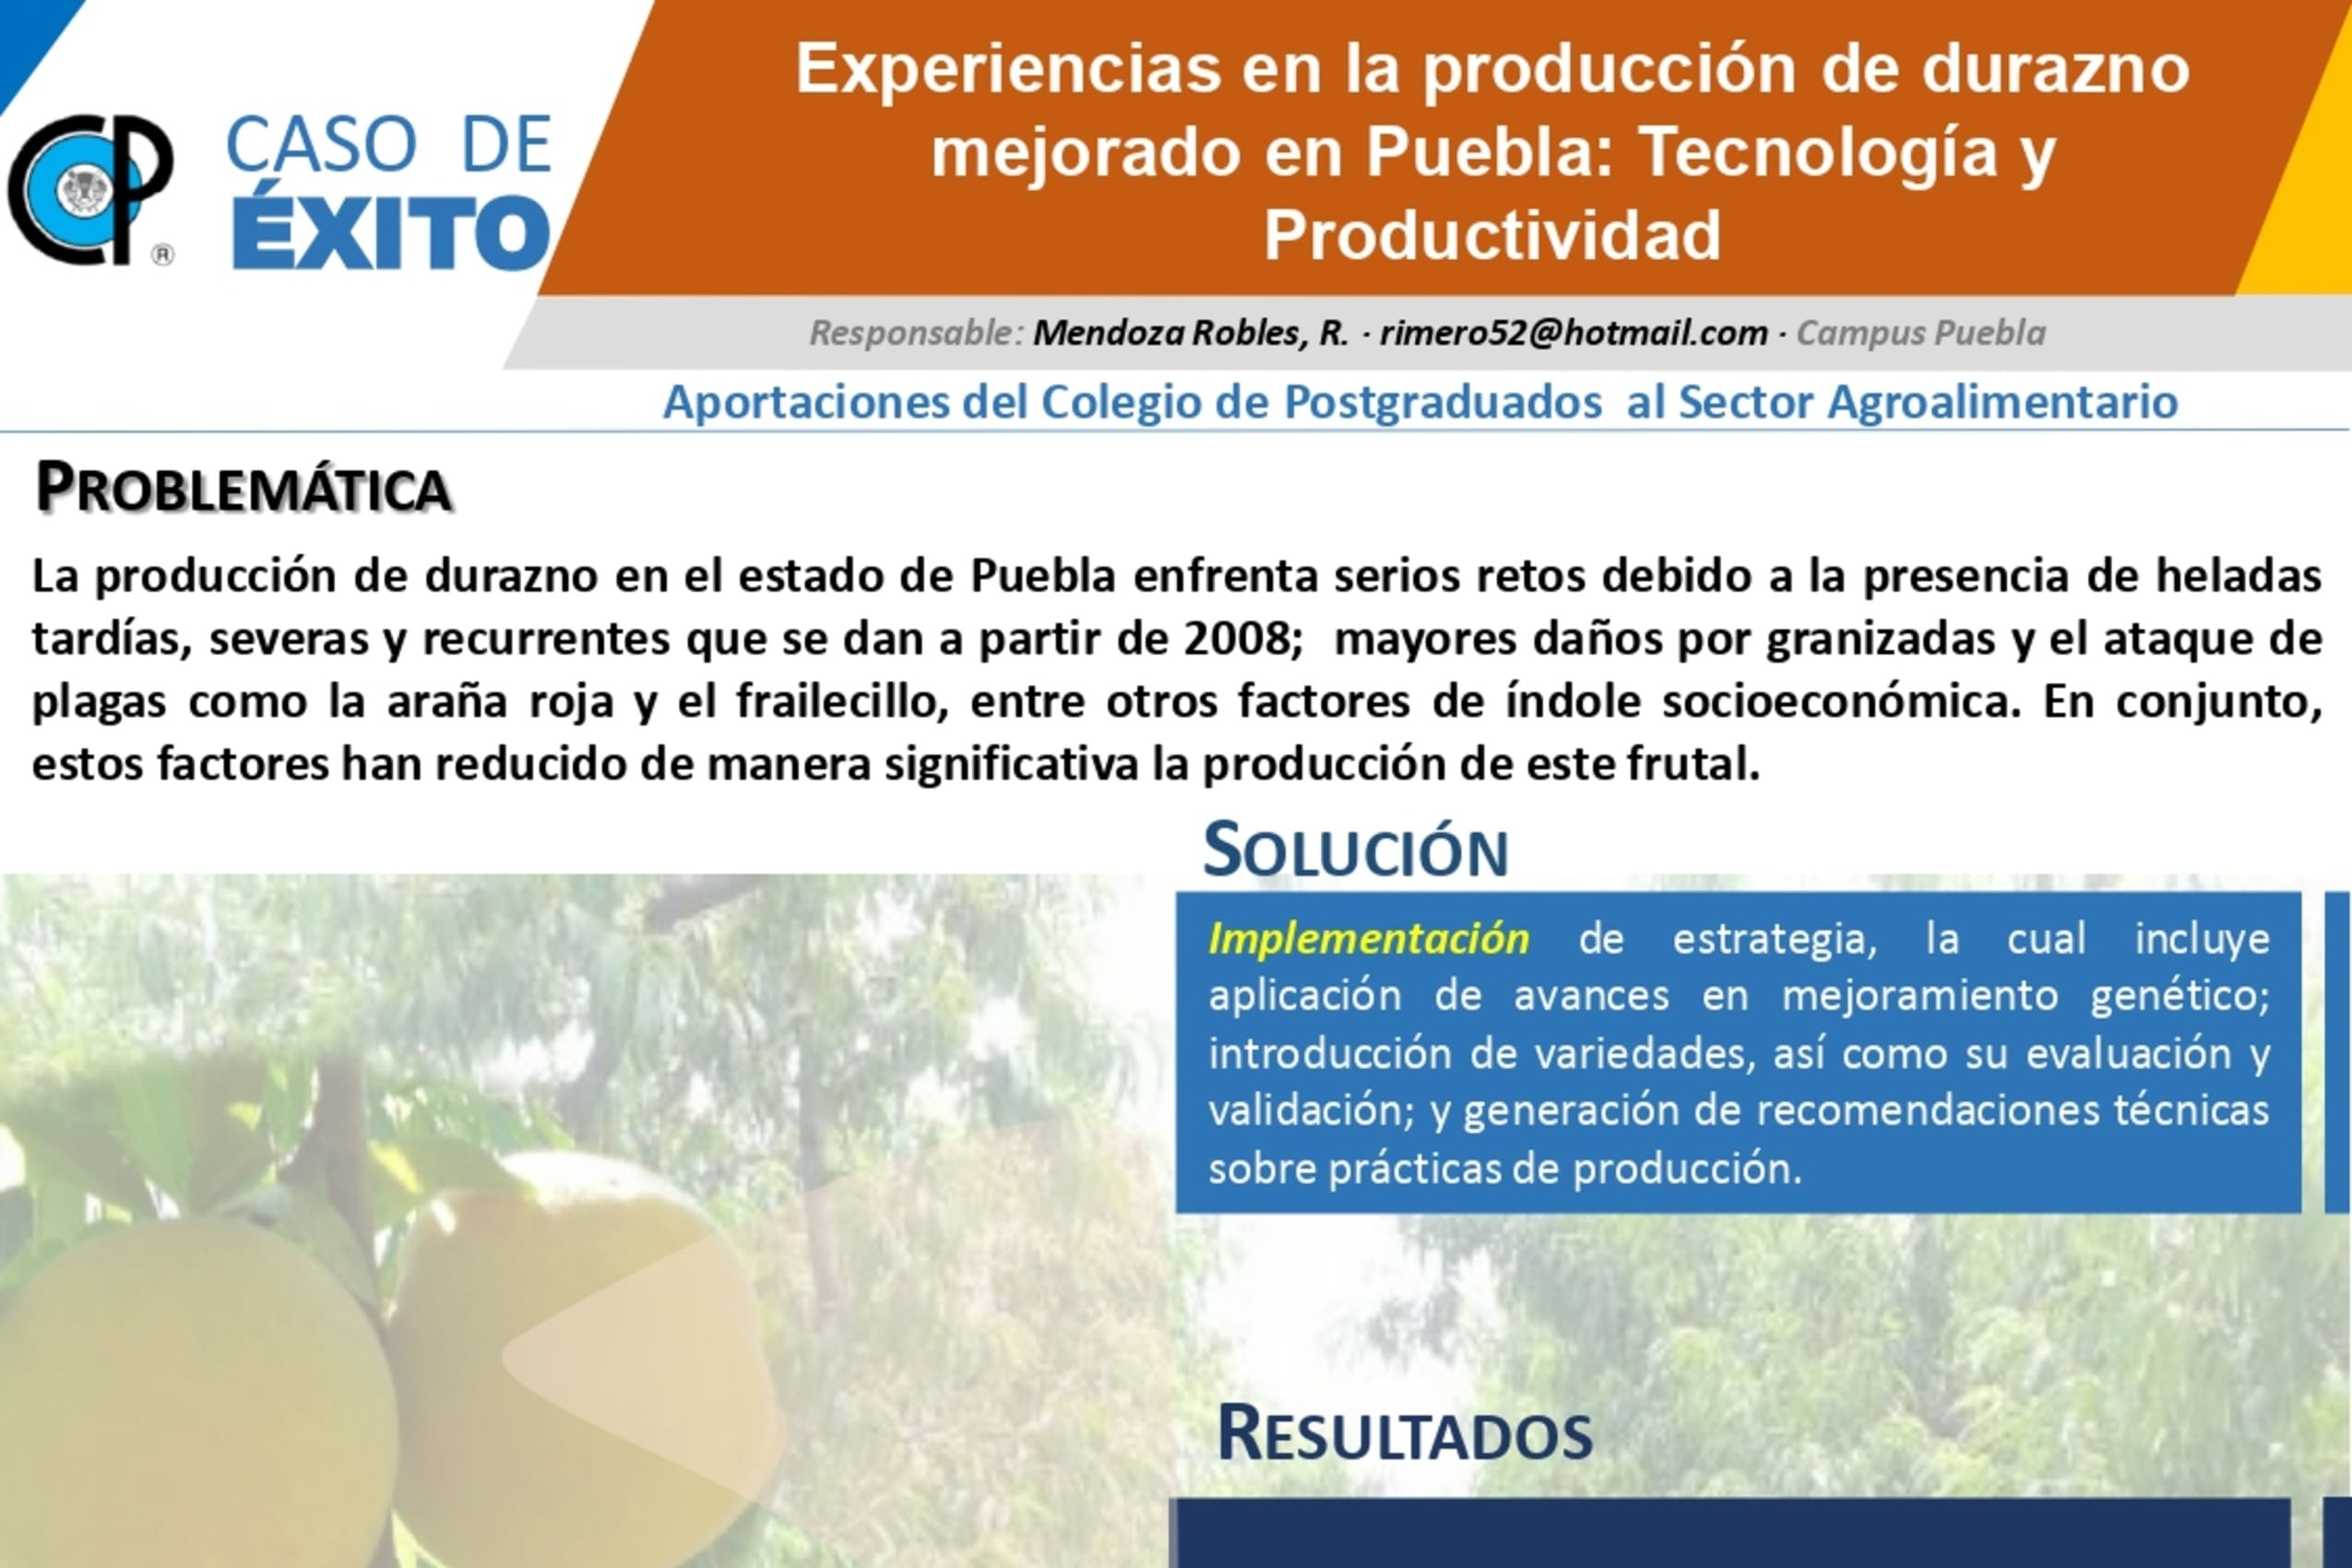 Experiencias en la producción de durazno mejorado en Puebla: Tecnología y Productividad.